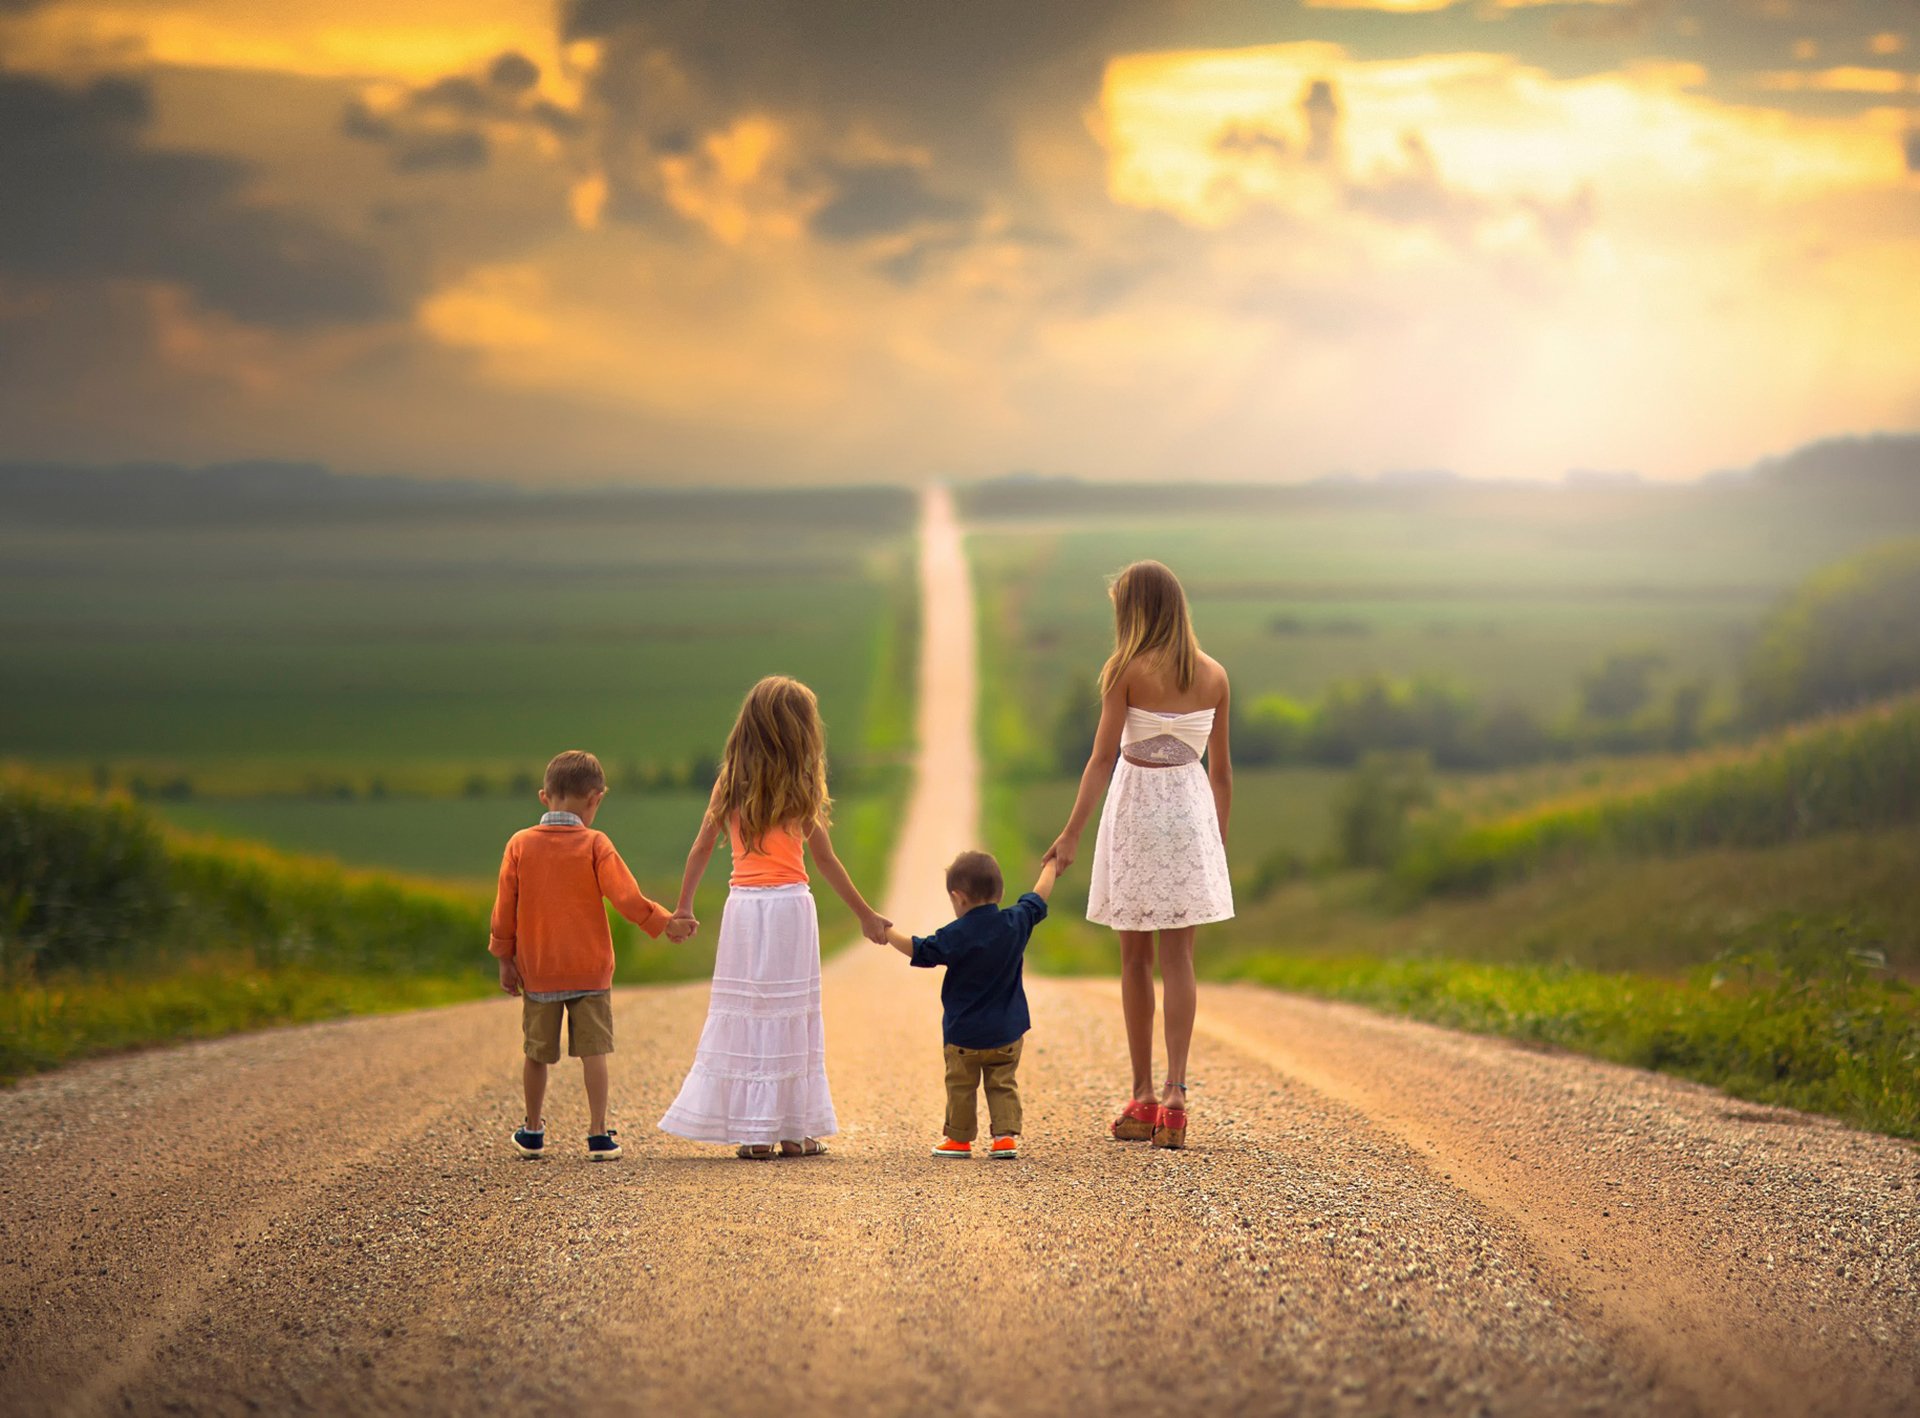 Будущем счастливая семья. Счастливое будущее детей. Счастливая дорога. Счастливая семья идет по дороге. Дети идут по дороге.